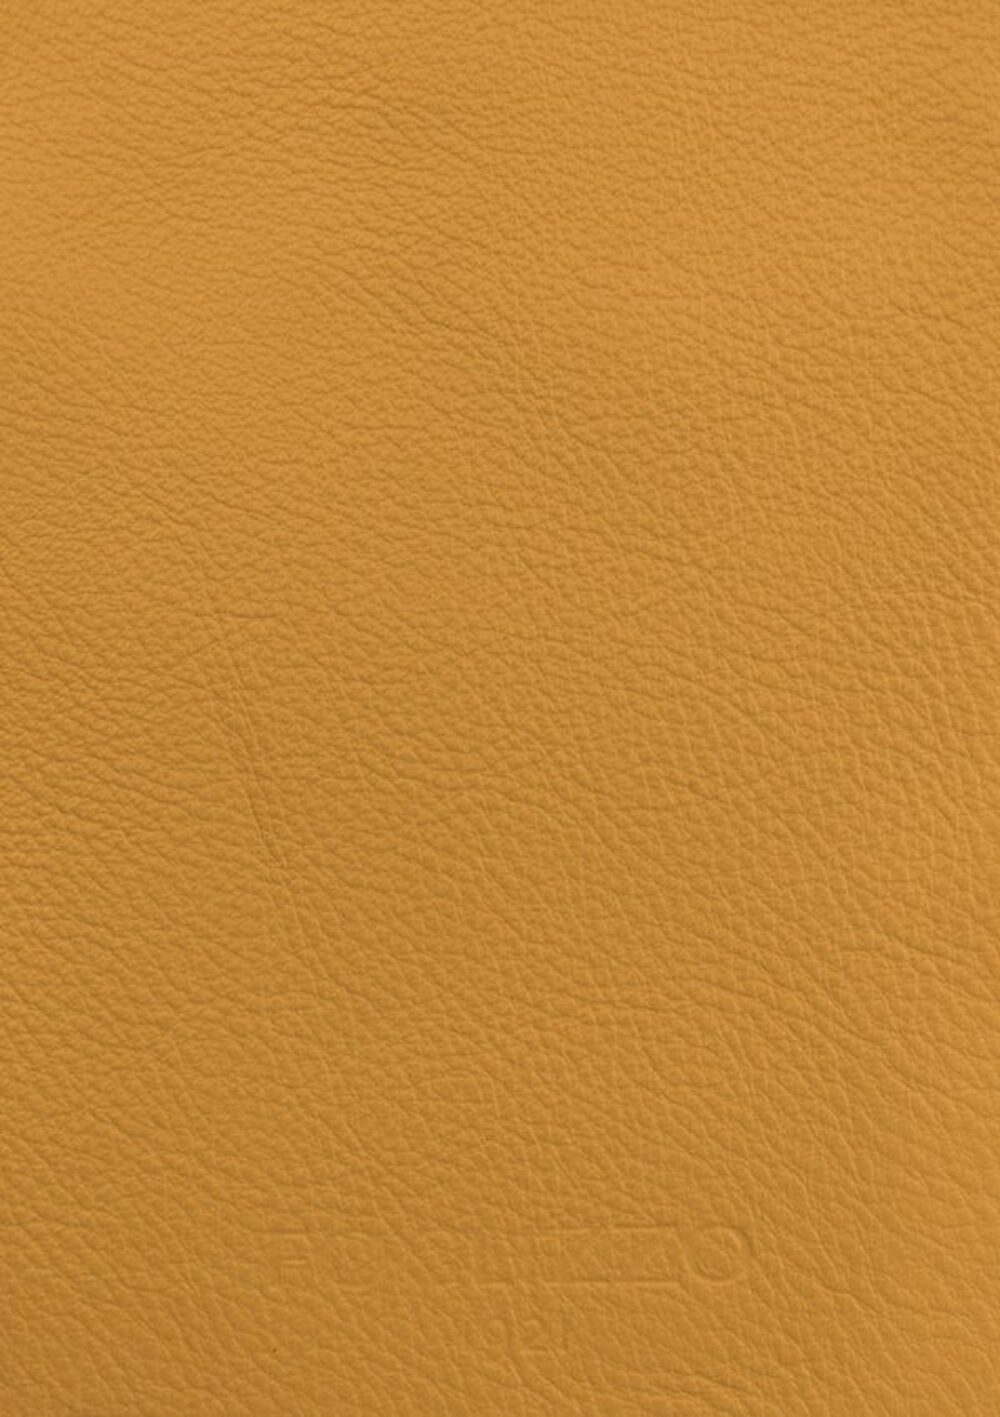 Diseño de lujo y alfombras de alta gama hechas a medida • Pumpkin Seed Yellow Jade